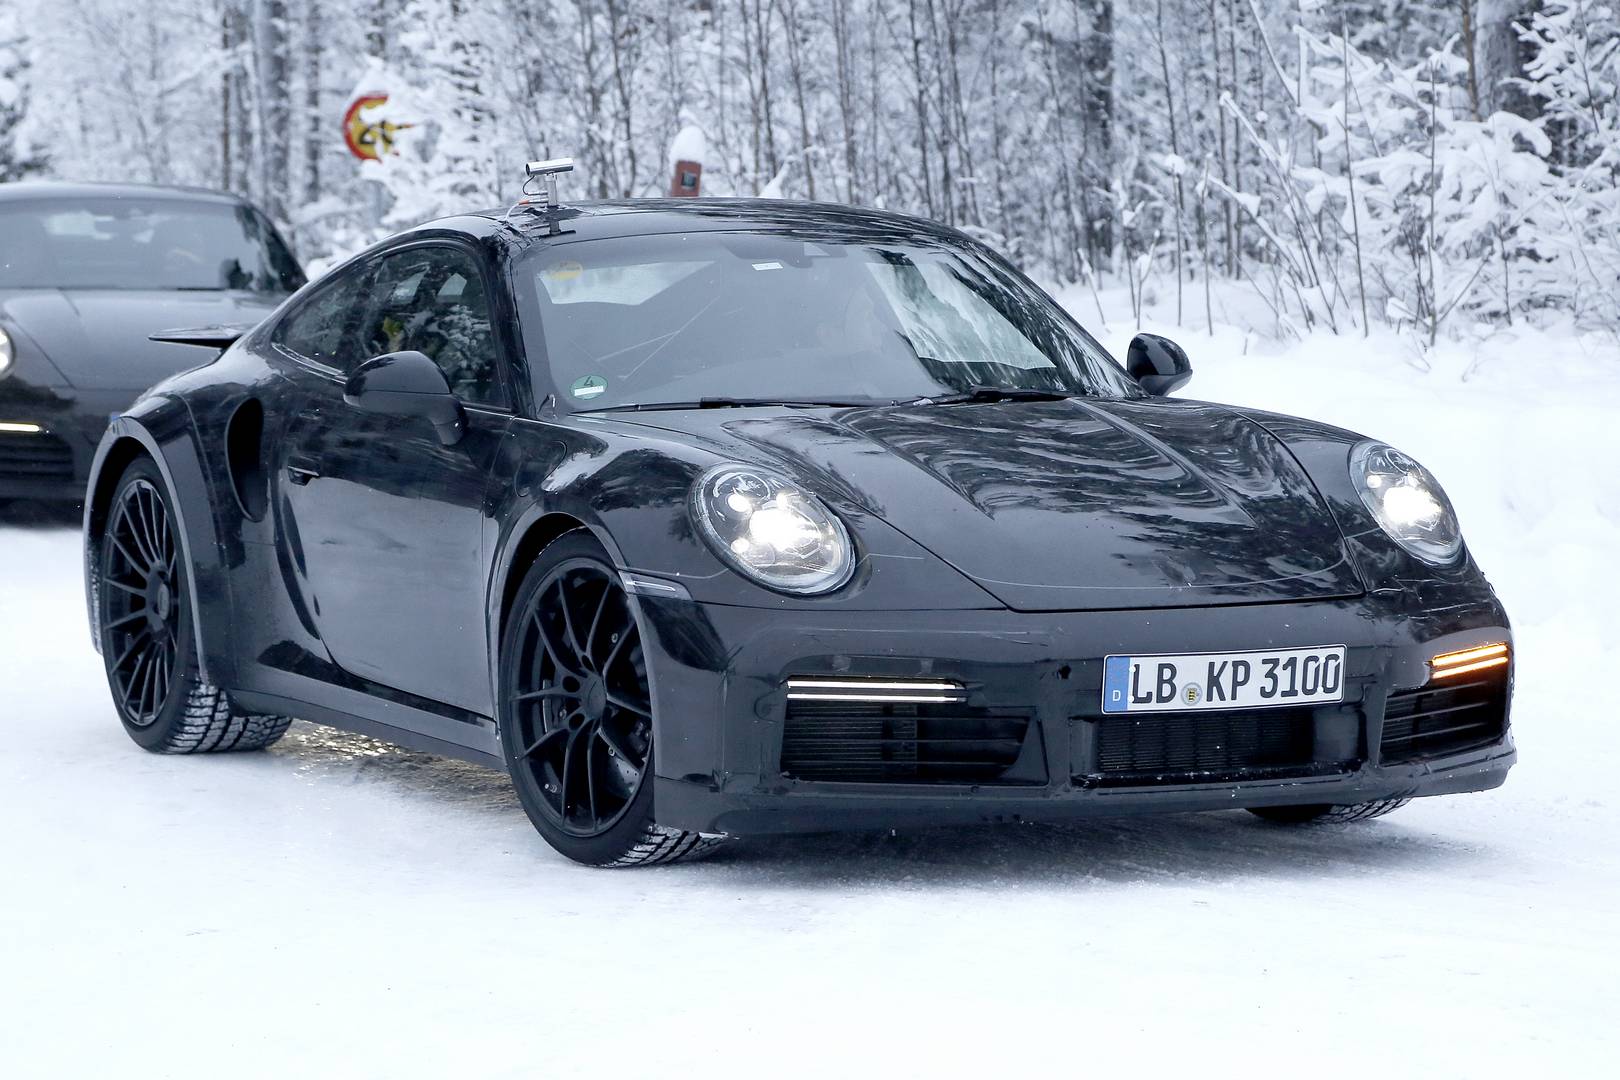 Ожидается, что 2010 Porsche 911 Turbo дебютирует сразу после более стандартных моделей 911. На фотографиях мы видим более прямую переднюю «юбку» и прямой передний край капота, а также бОльшие крылья. Porsche сохранит ключевые стилистические реплики к